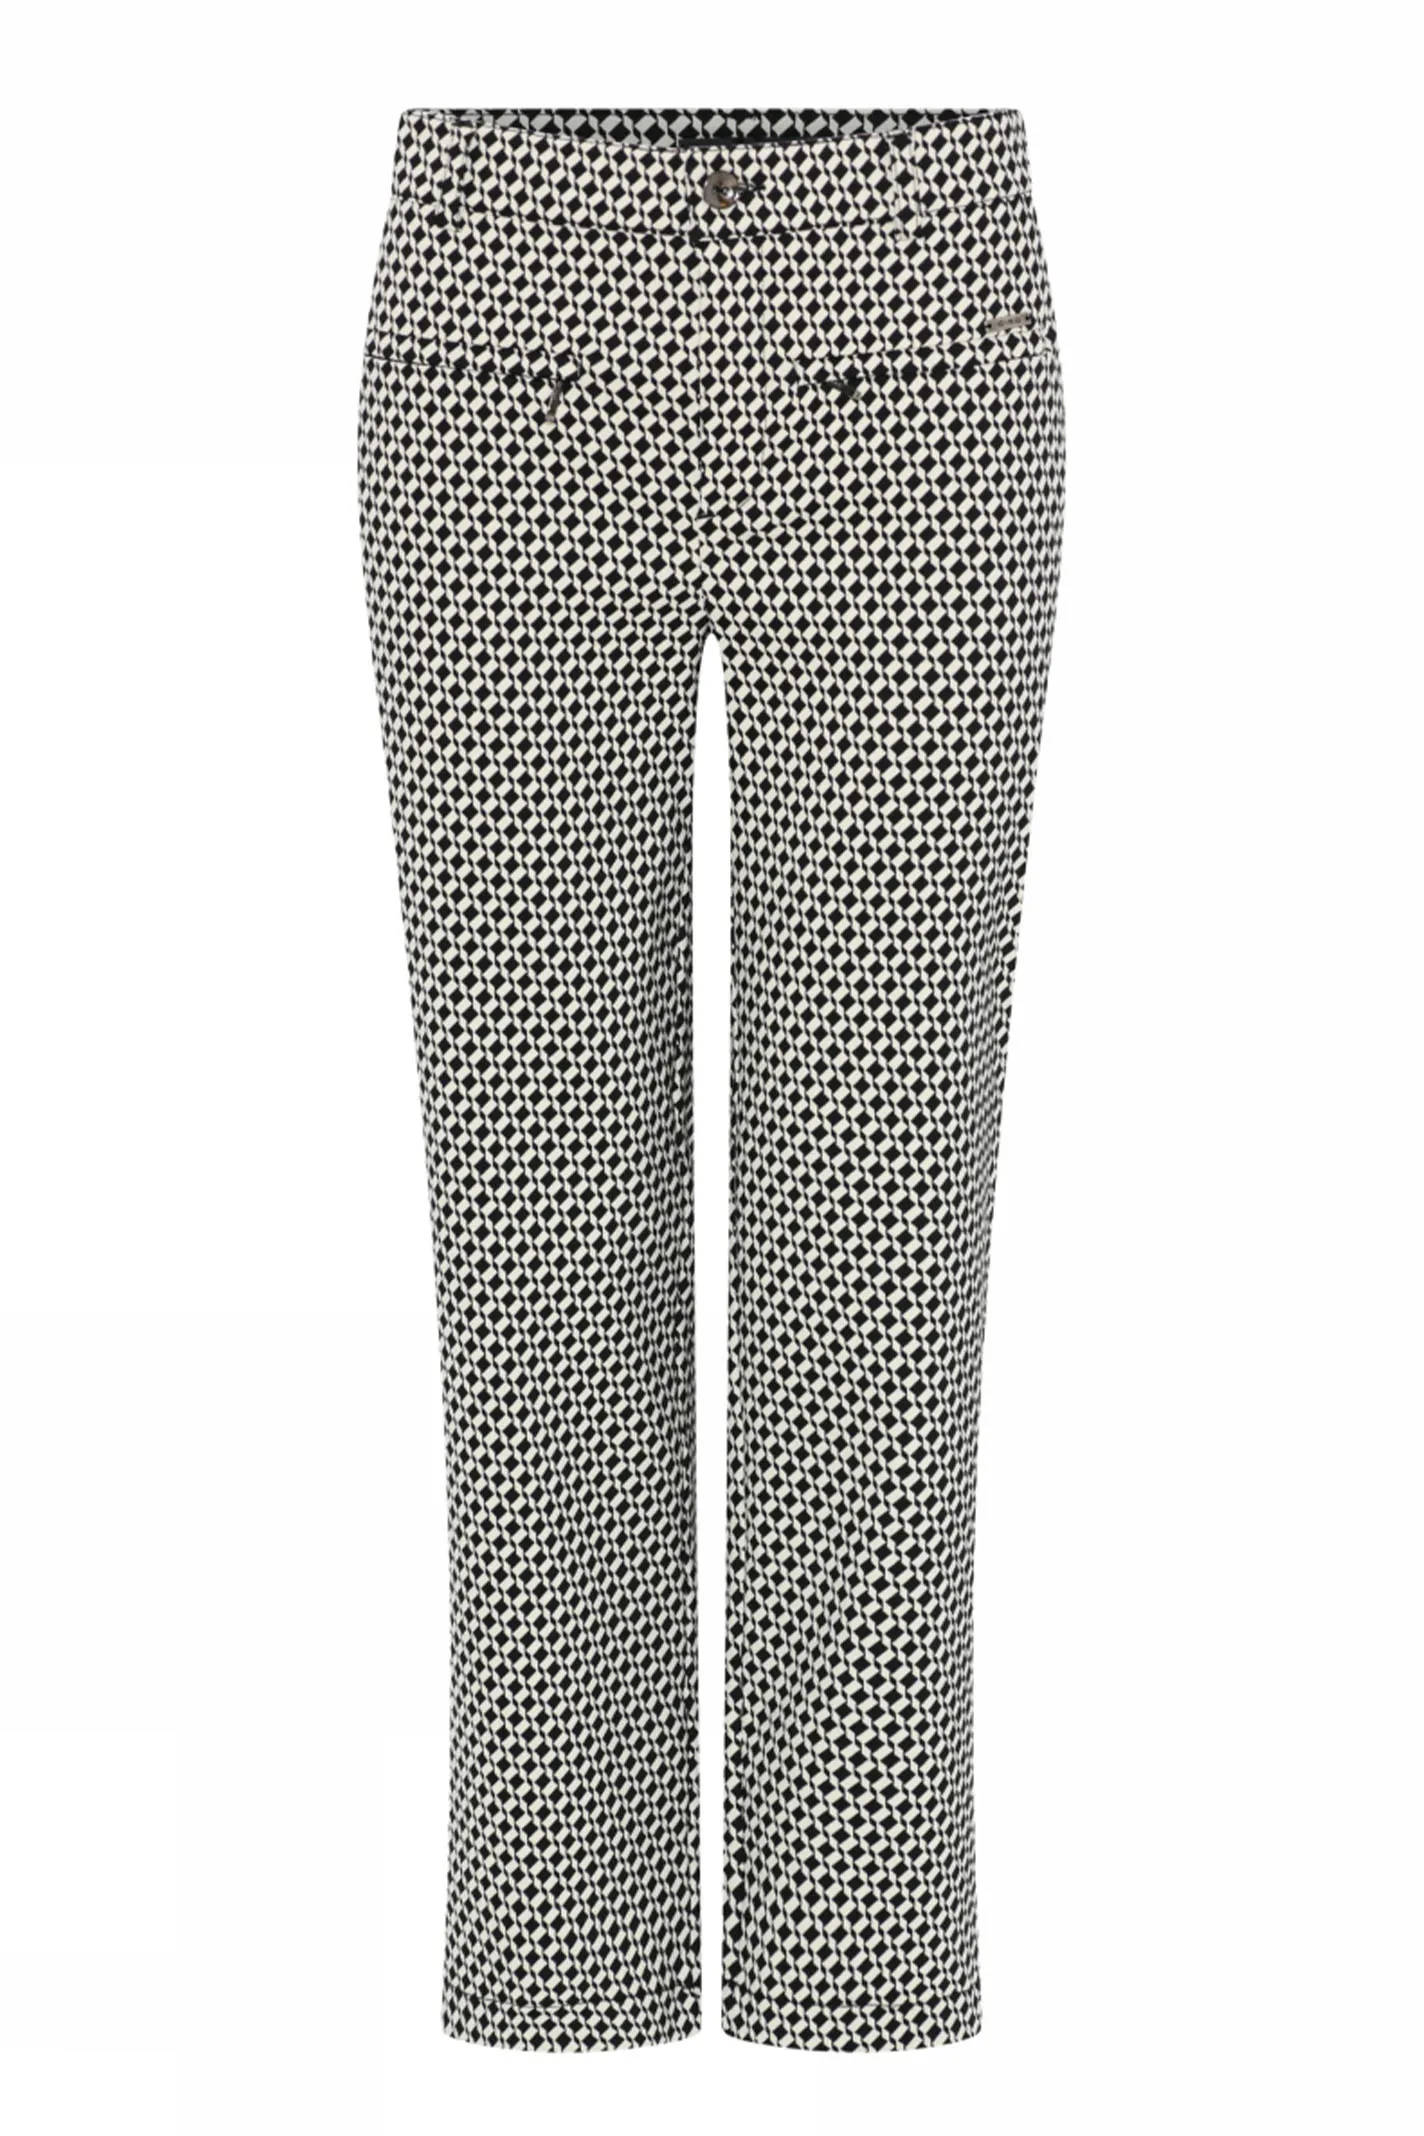 Vittig Intakt huh Cro tøj - Shop Cro bukser online hos Bustedwoman - Gratis levering